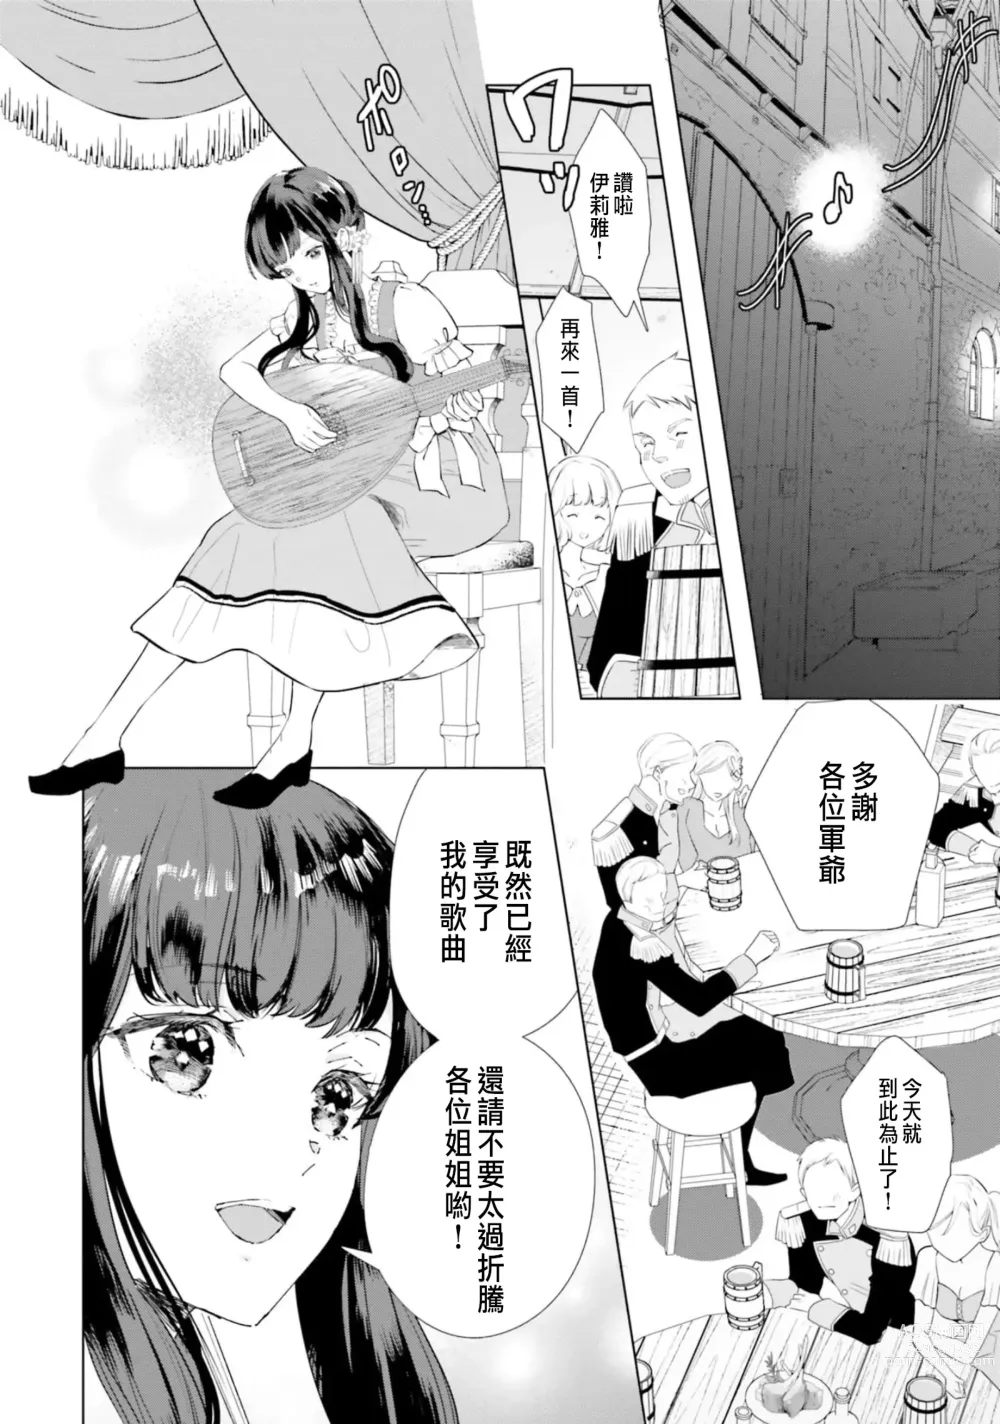 Page 7 of manga 總之先來做吧 1